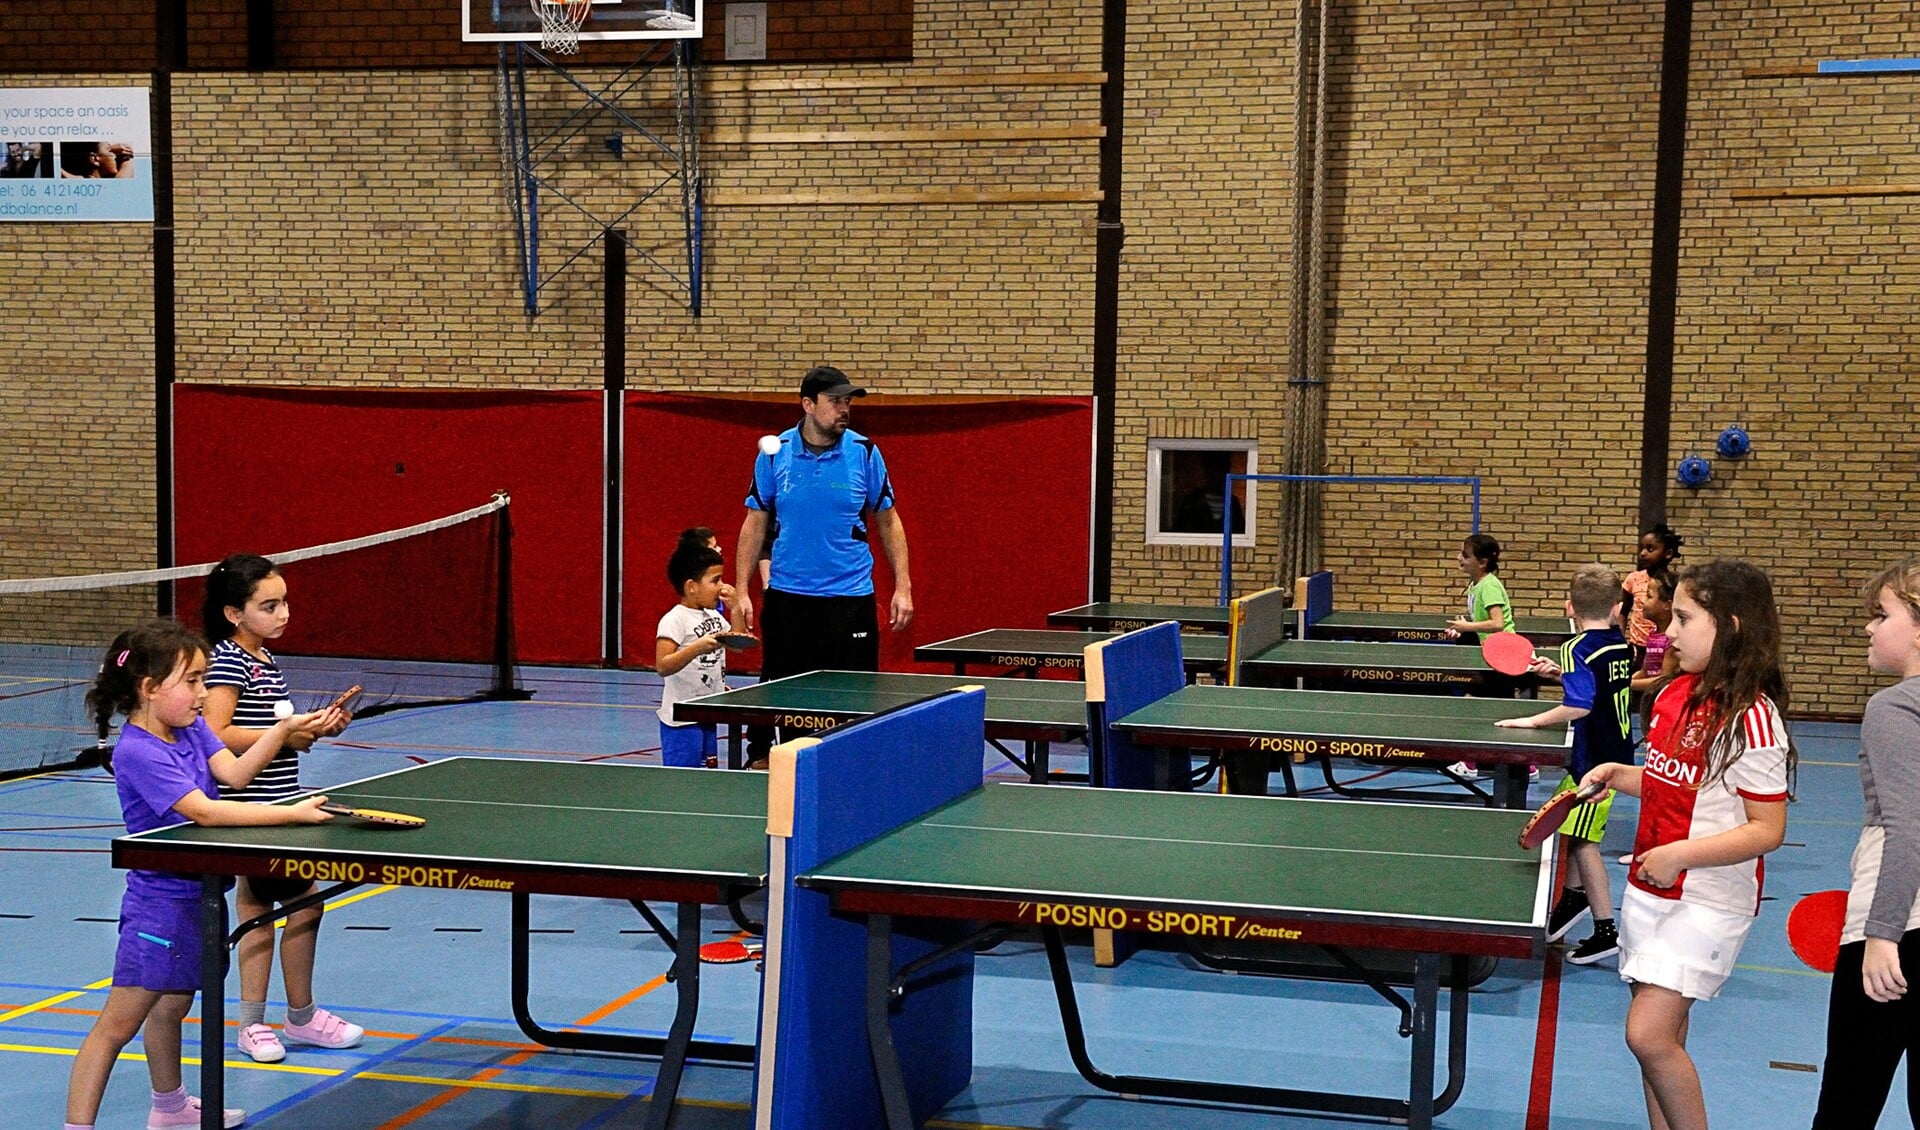 Tafeltennisvereniging Diemen is een van de gebruikers van het sportcentrum.